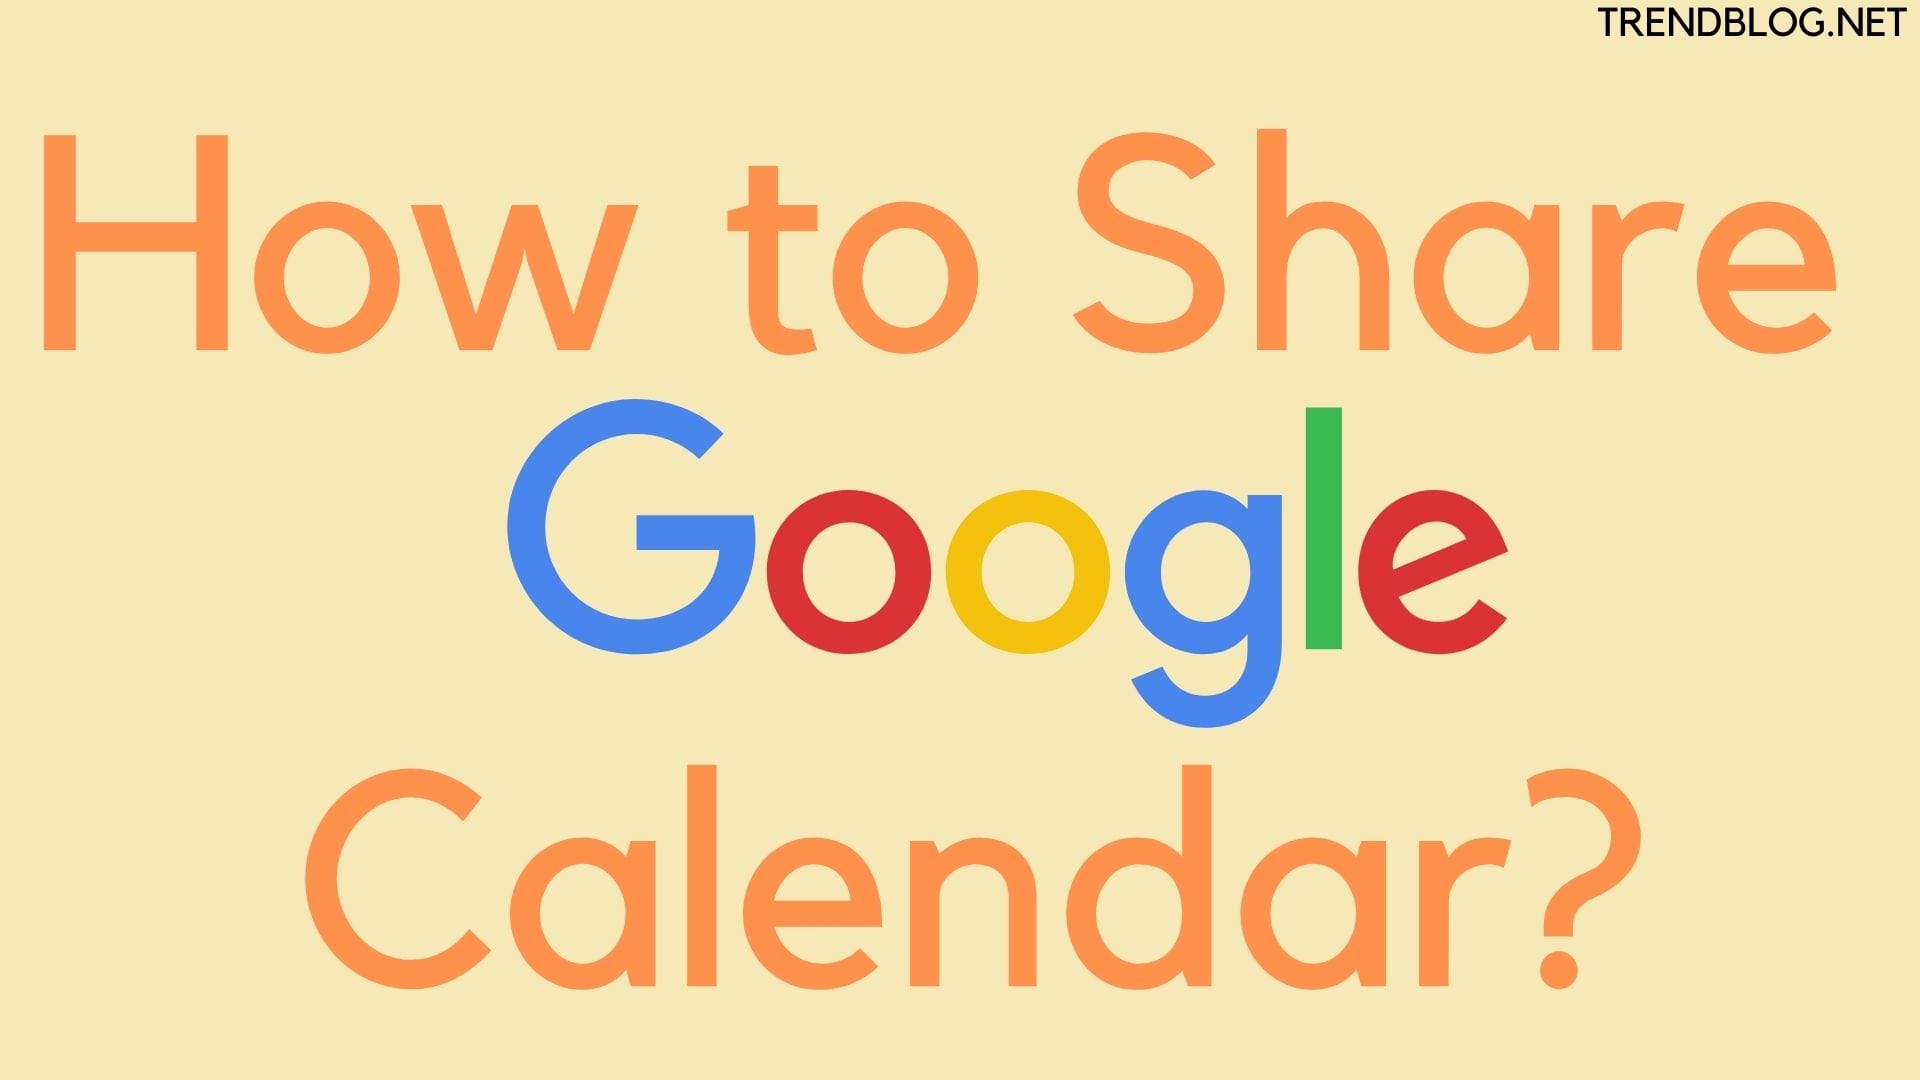  How to Share Google Calendar?